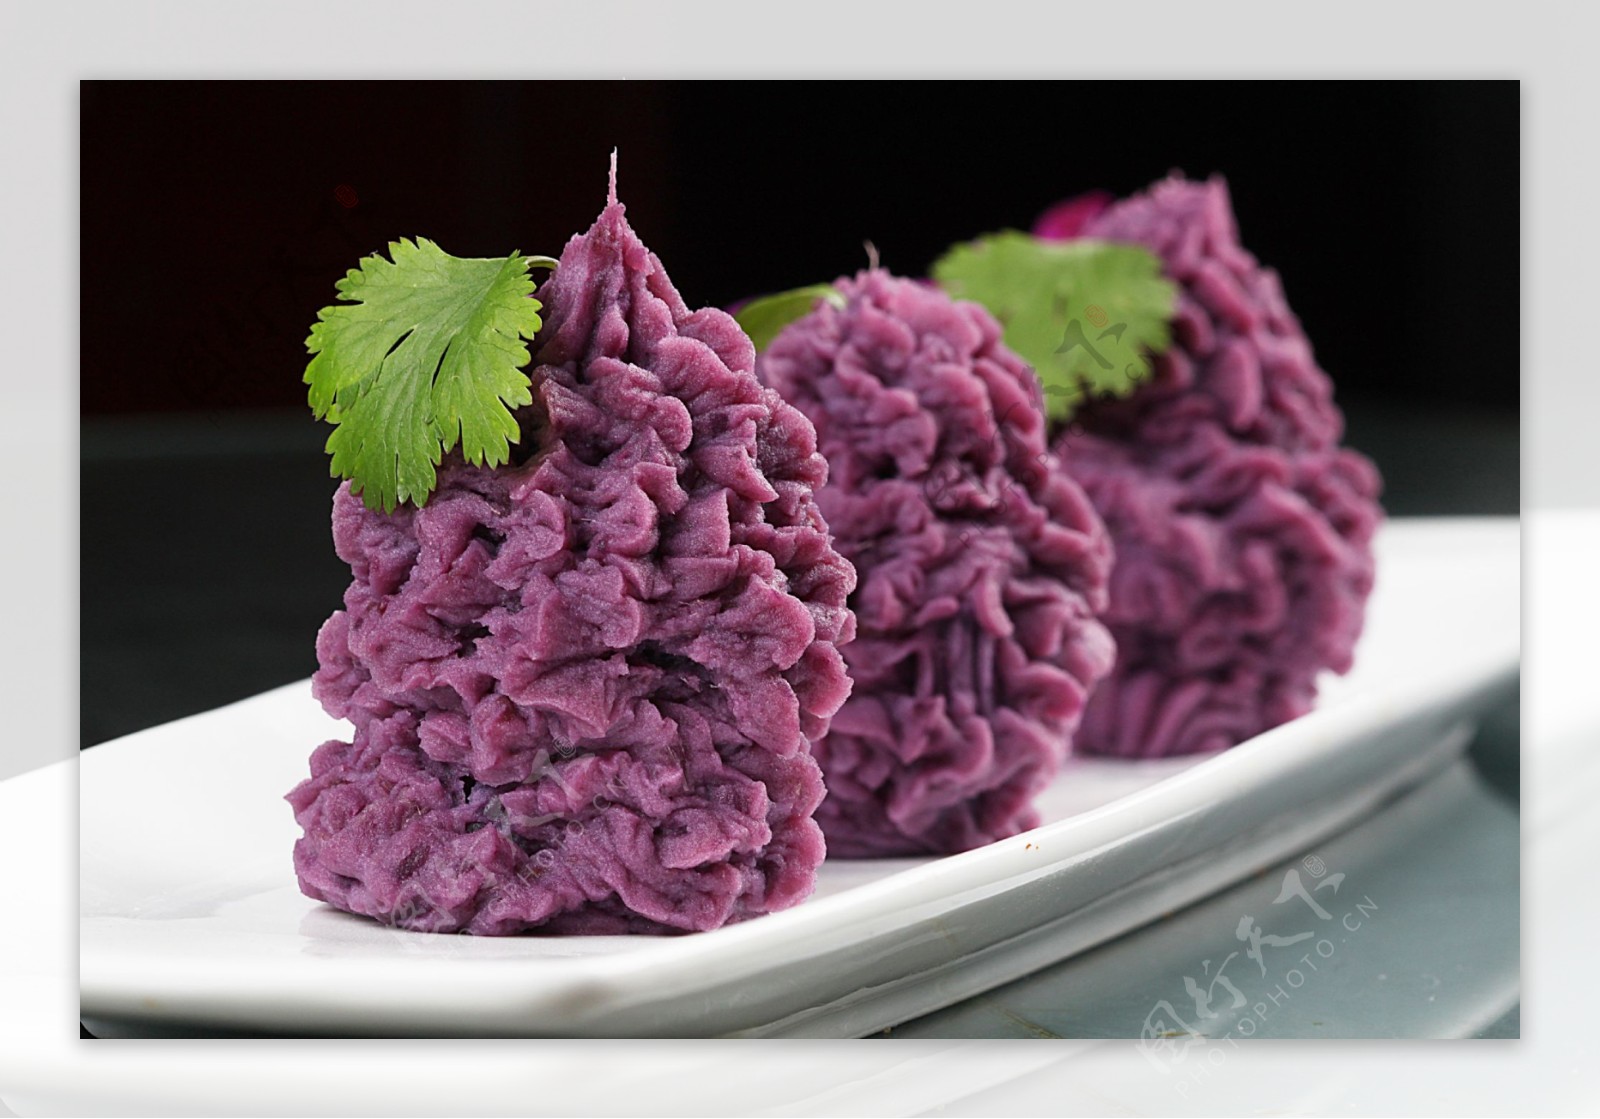 蓝莓紫薯塔图片